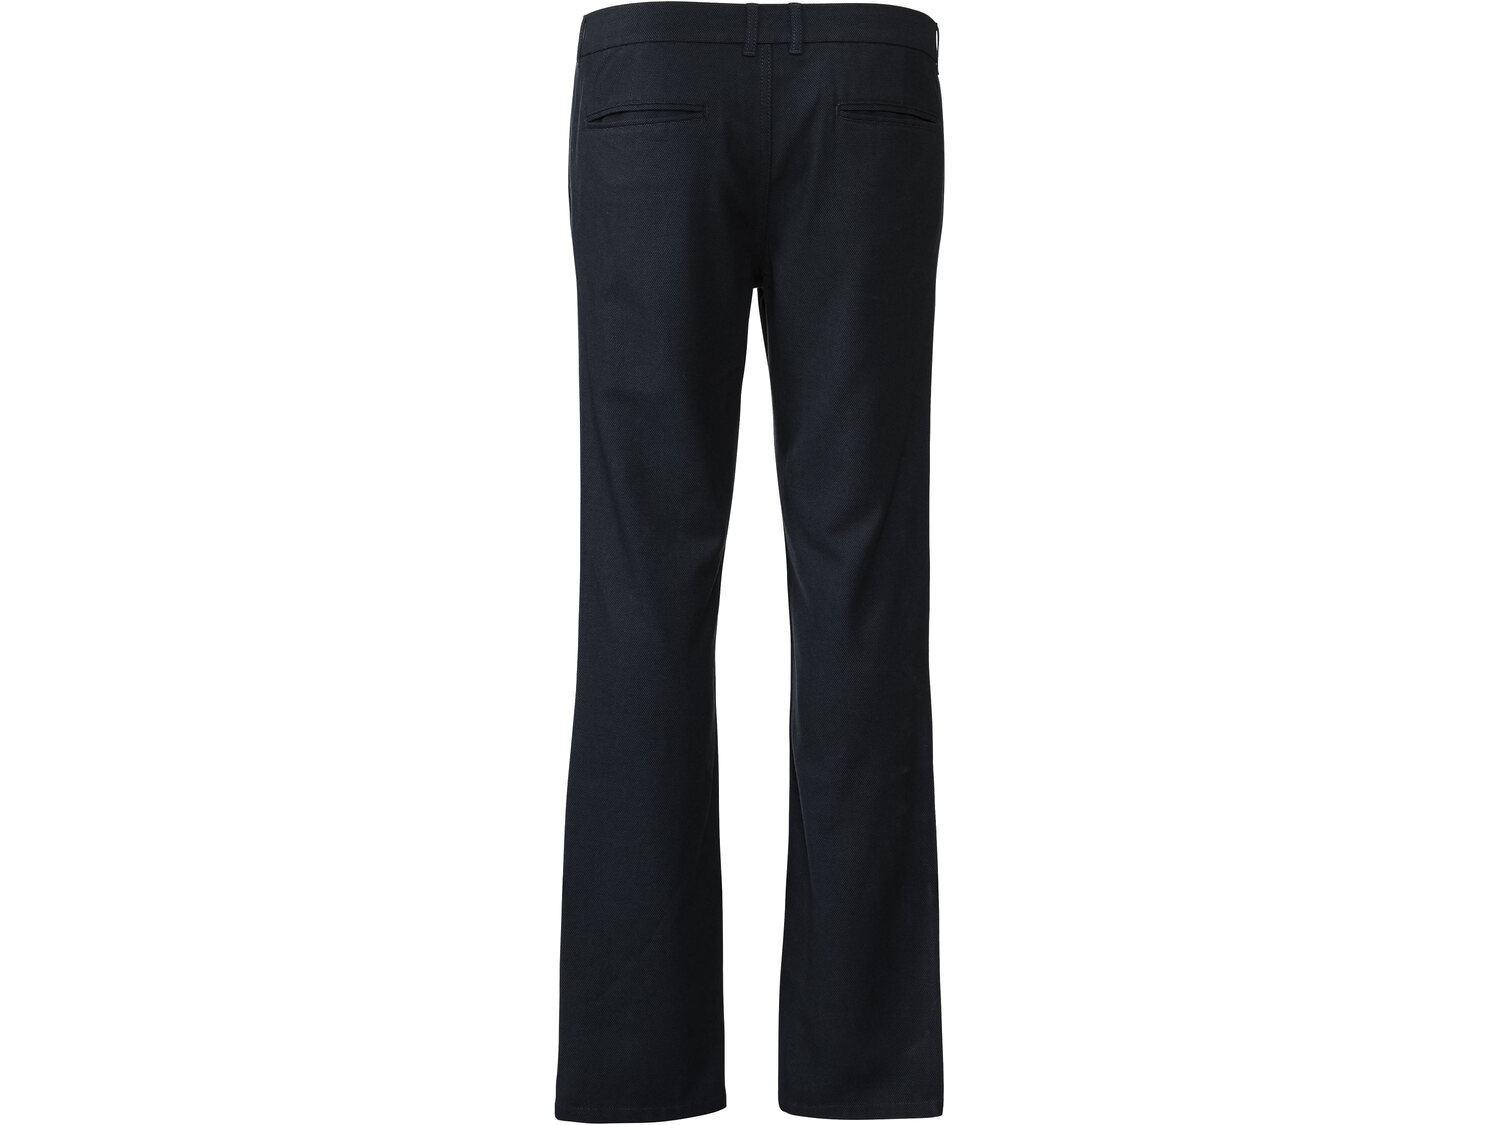 Spodnie Livergy, cena 44,99 PLN 
- klasyczny kr&oacute;j
- wysoka zawartość ...